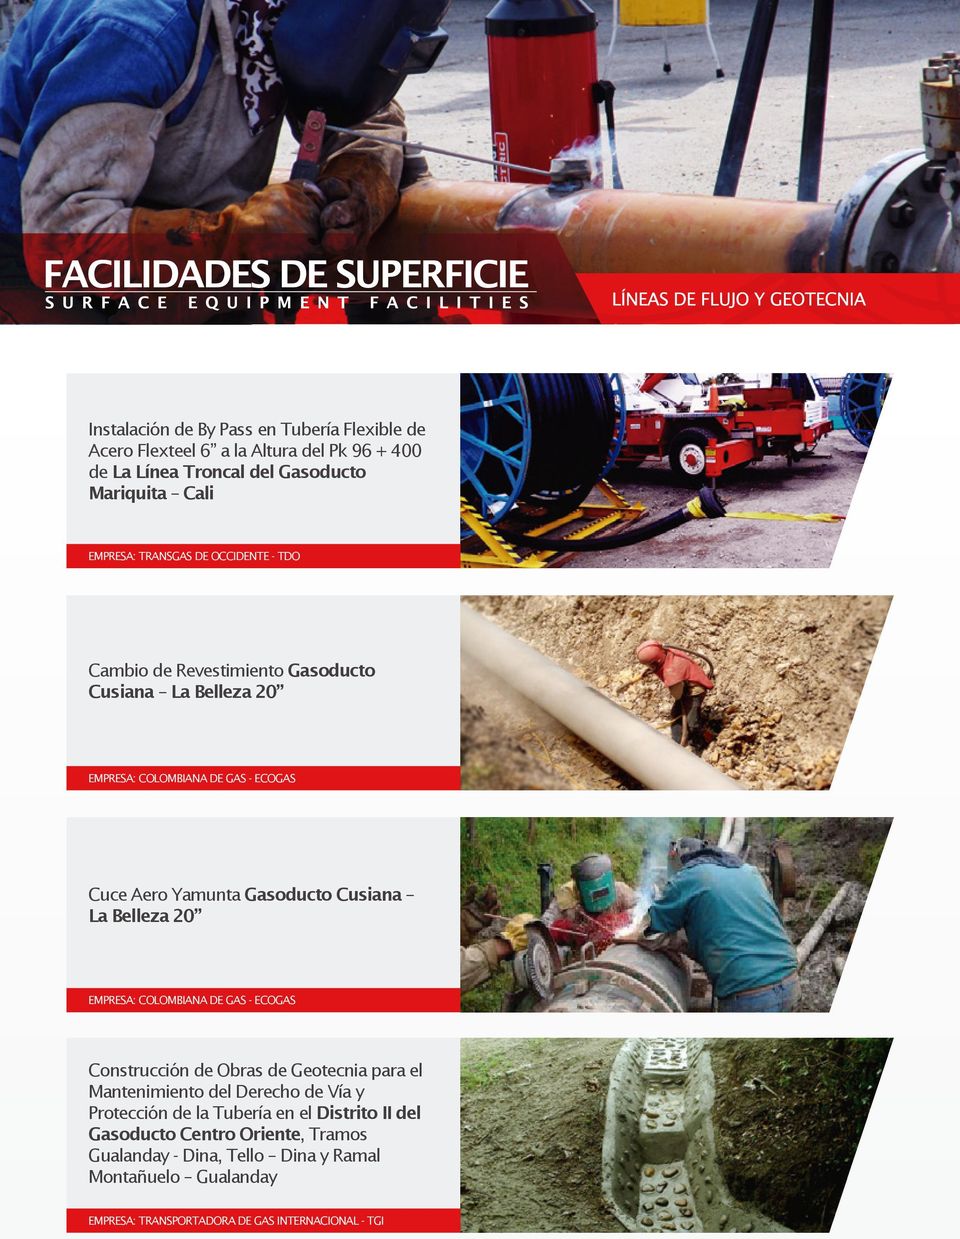 La Belleza 20 EMPRESA: COLOMBIANA DE GAS - ECOGAS Construcción de Obras de Geotecnia para el Mantenimiento del Derecho de Vía y Protección de la Tubería en